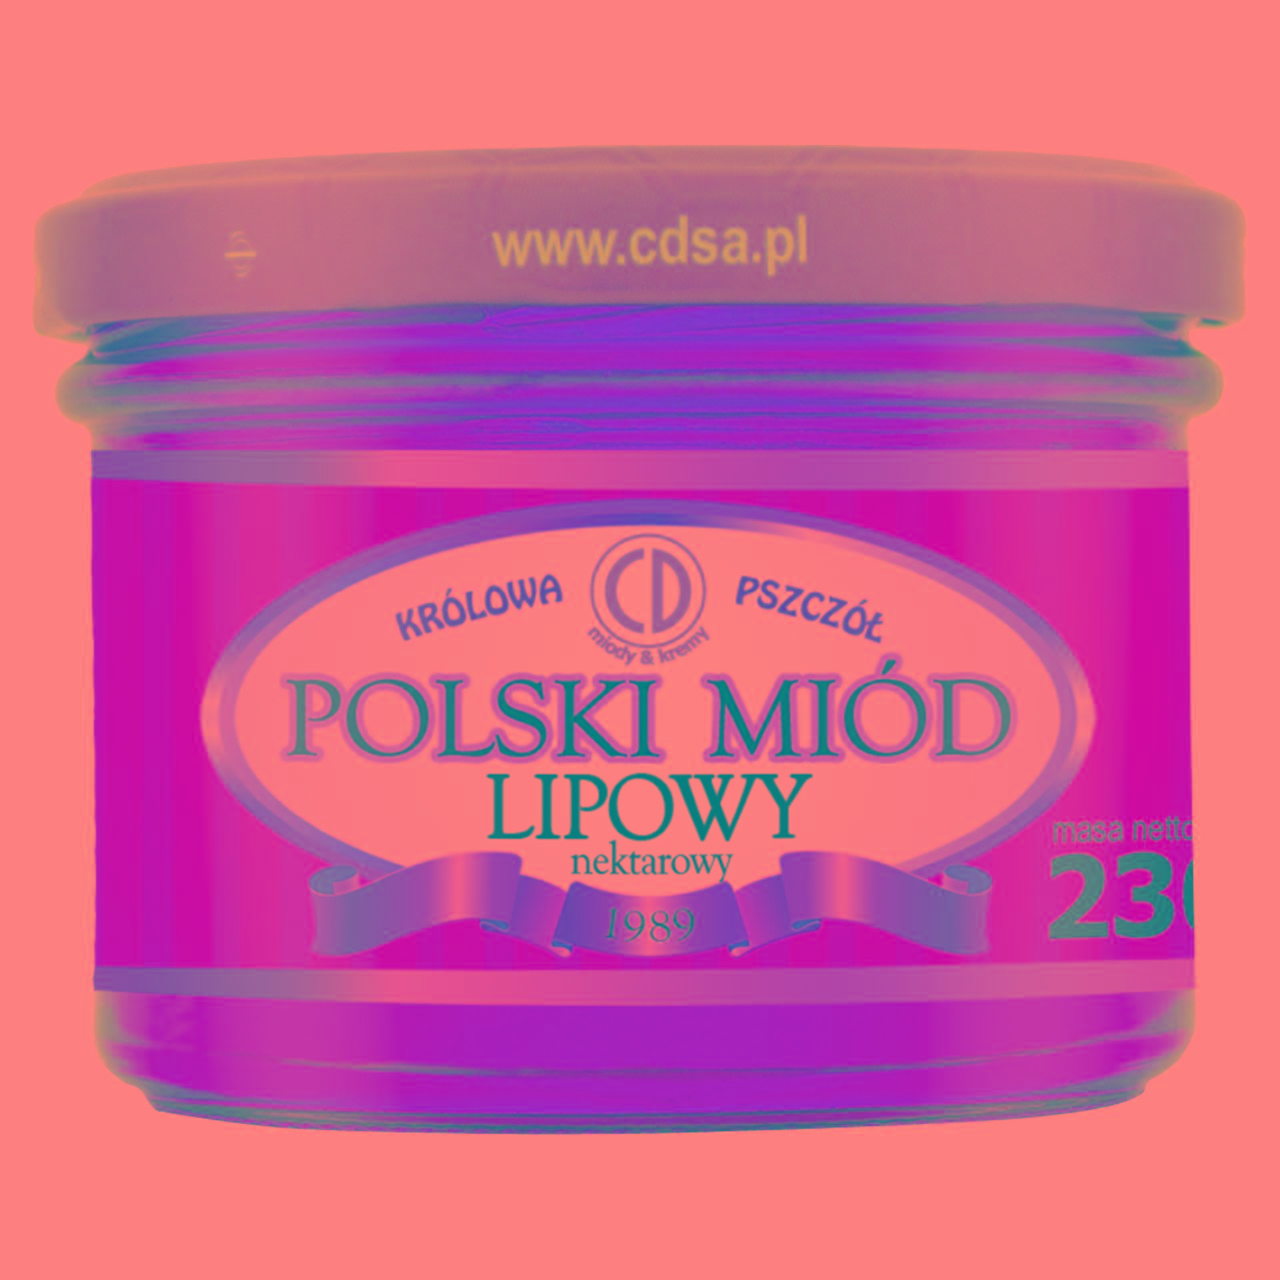 Zdjęcia - Królowa Pszczół Polski miód lipowy nektarowy 230 g